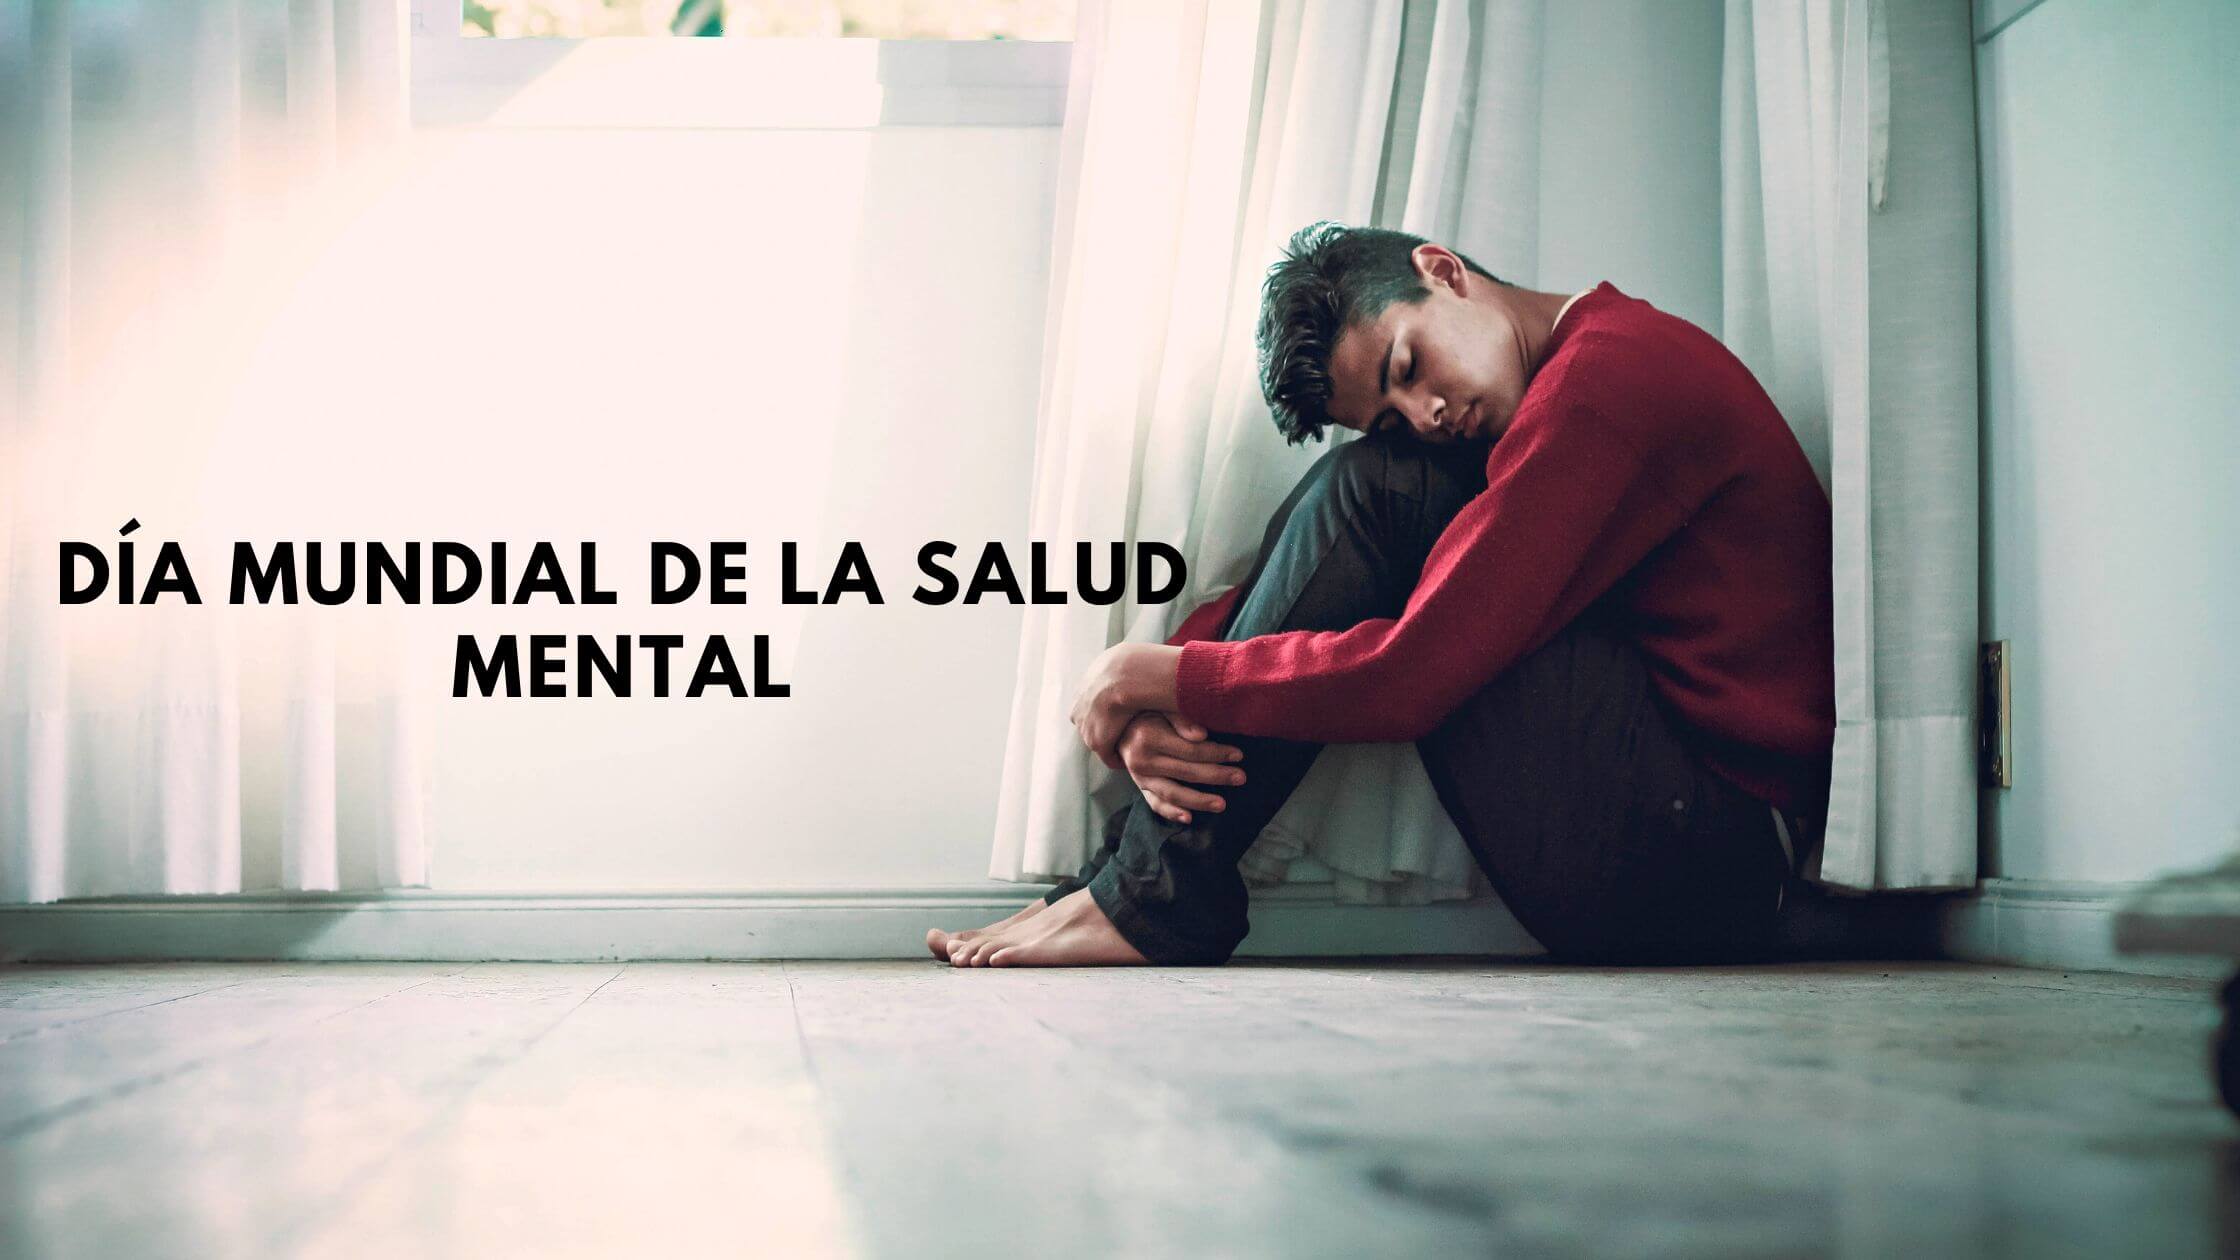 Dia Mundial de la Salud Mental Signos y sintomas de la depresion 2